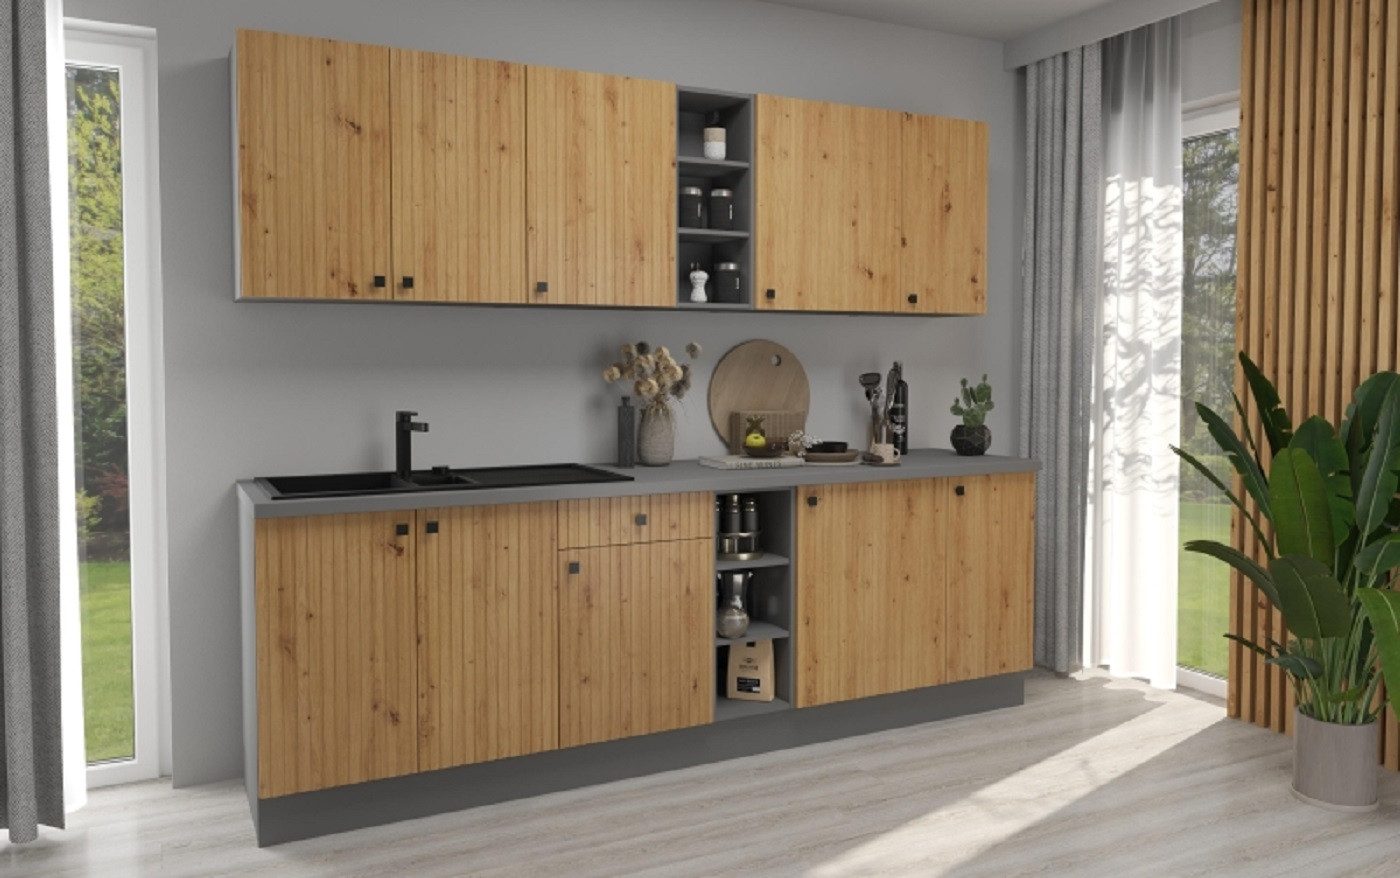 ROYAL24_MARKT Küche - Harmony Küchenzeile / Perfekte Ausgewogenheit für Ihren Raum, Ihre Zufriedenheit ist garantiert -Sorgfältig gestaltete Möbel